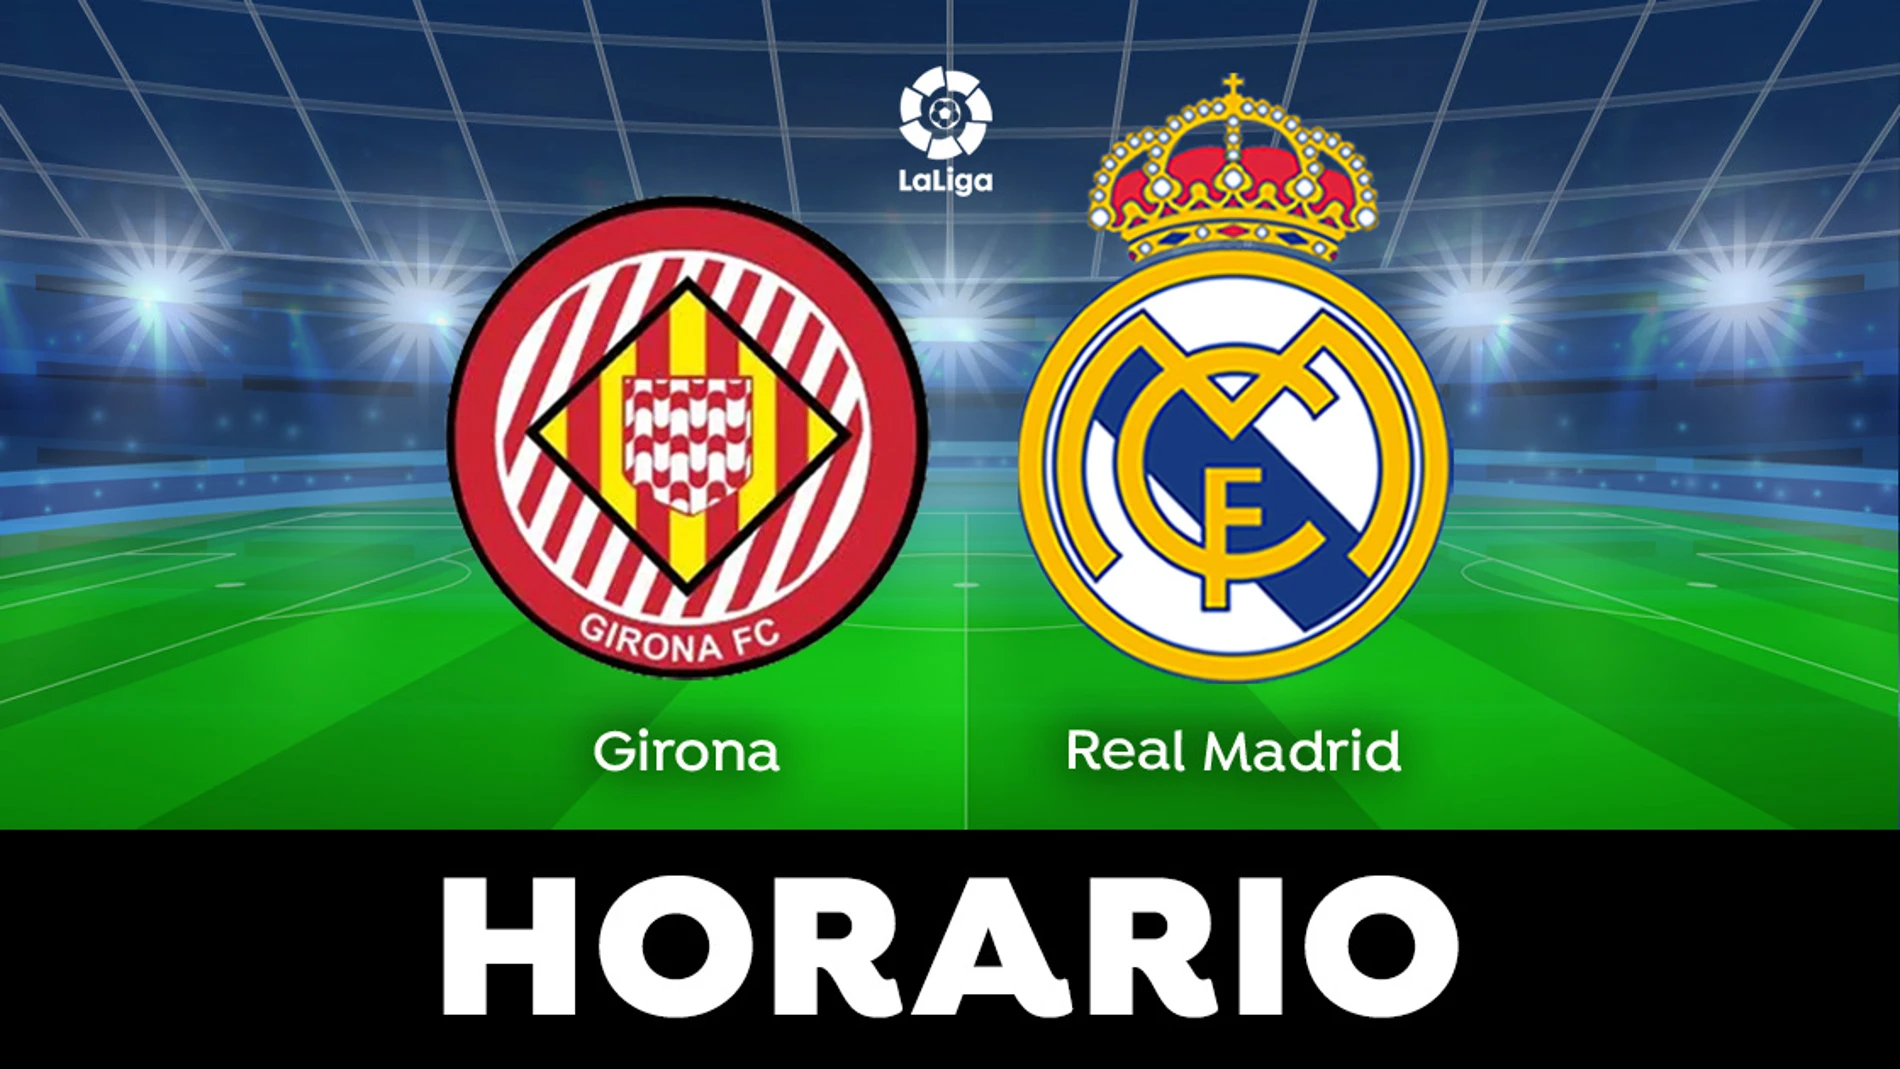 Girona - Real Madrid: Horario del partido de LaLiga